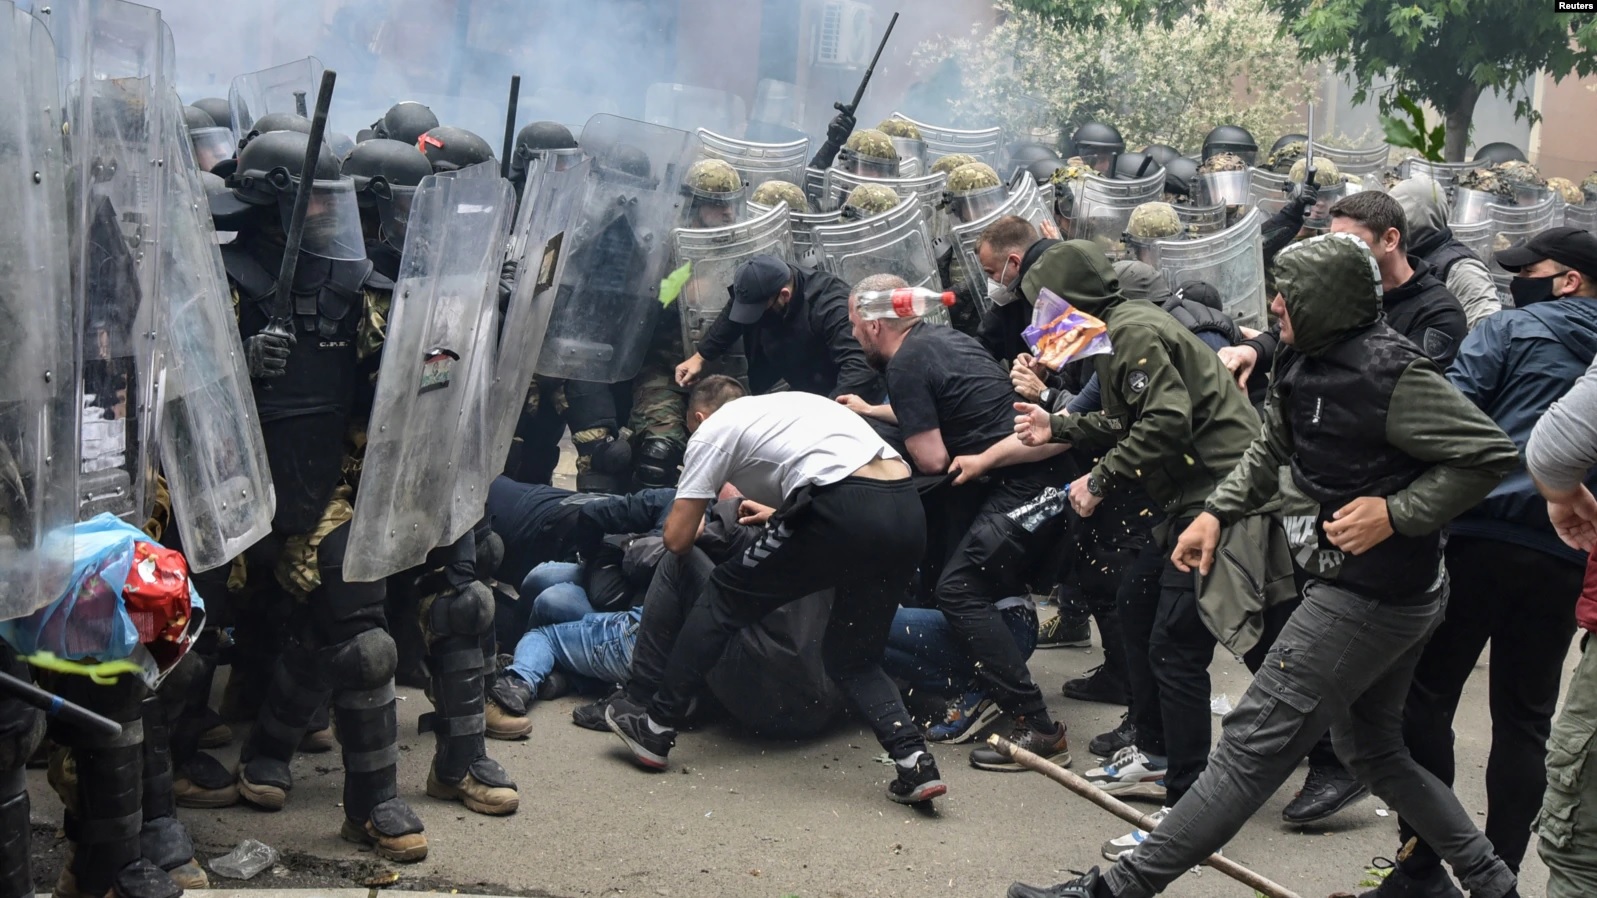 KFOR-i për dënimet e sulmuesve gjatë protestave në veri: Kemi marrë parasysh vendimet e gjykatës